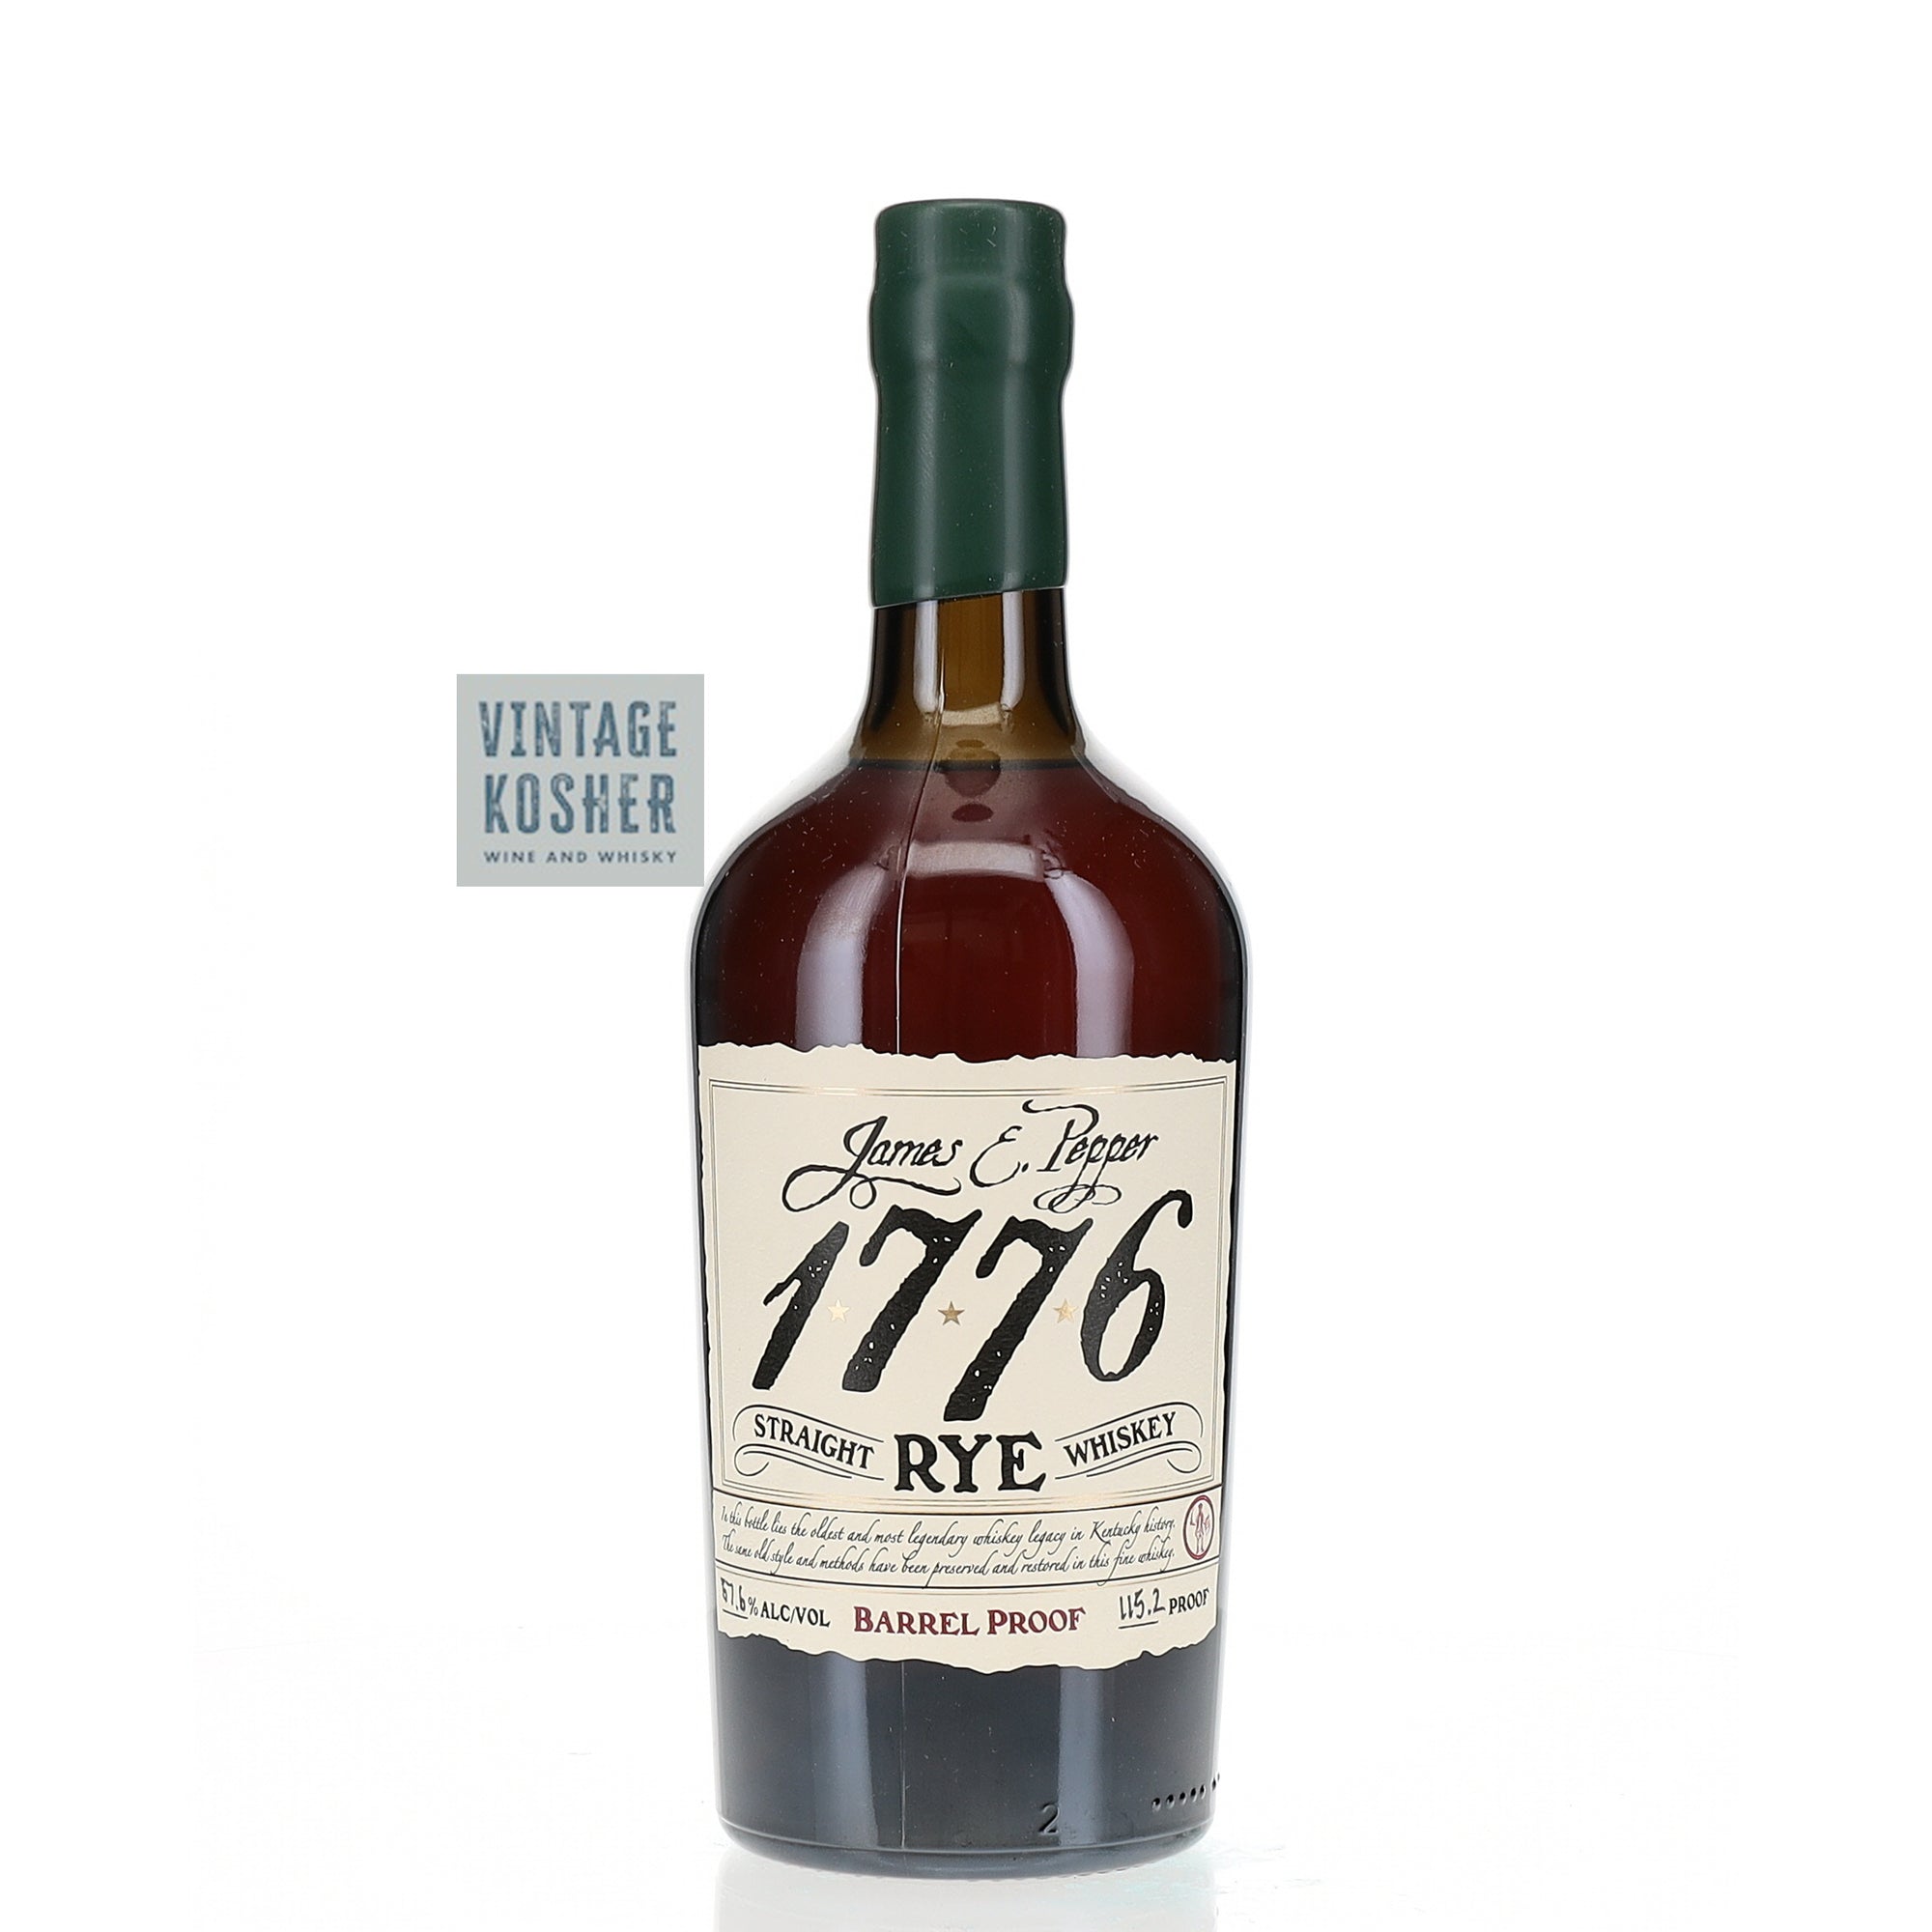 James E Pepper 1776 Straight Rye Whiskey Barrell Proof